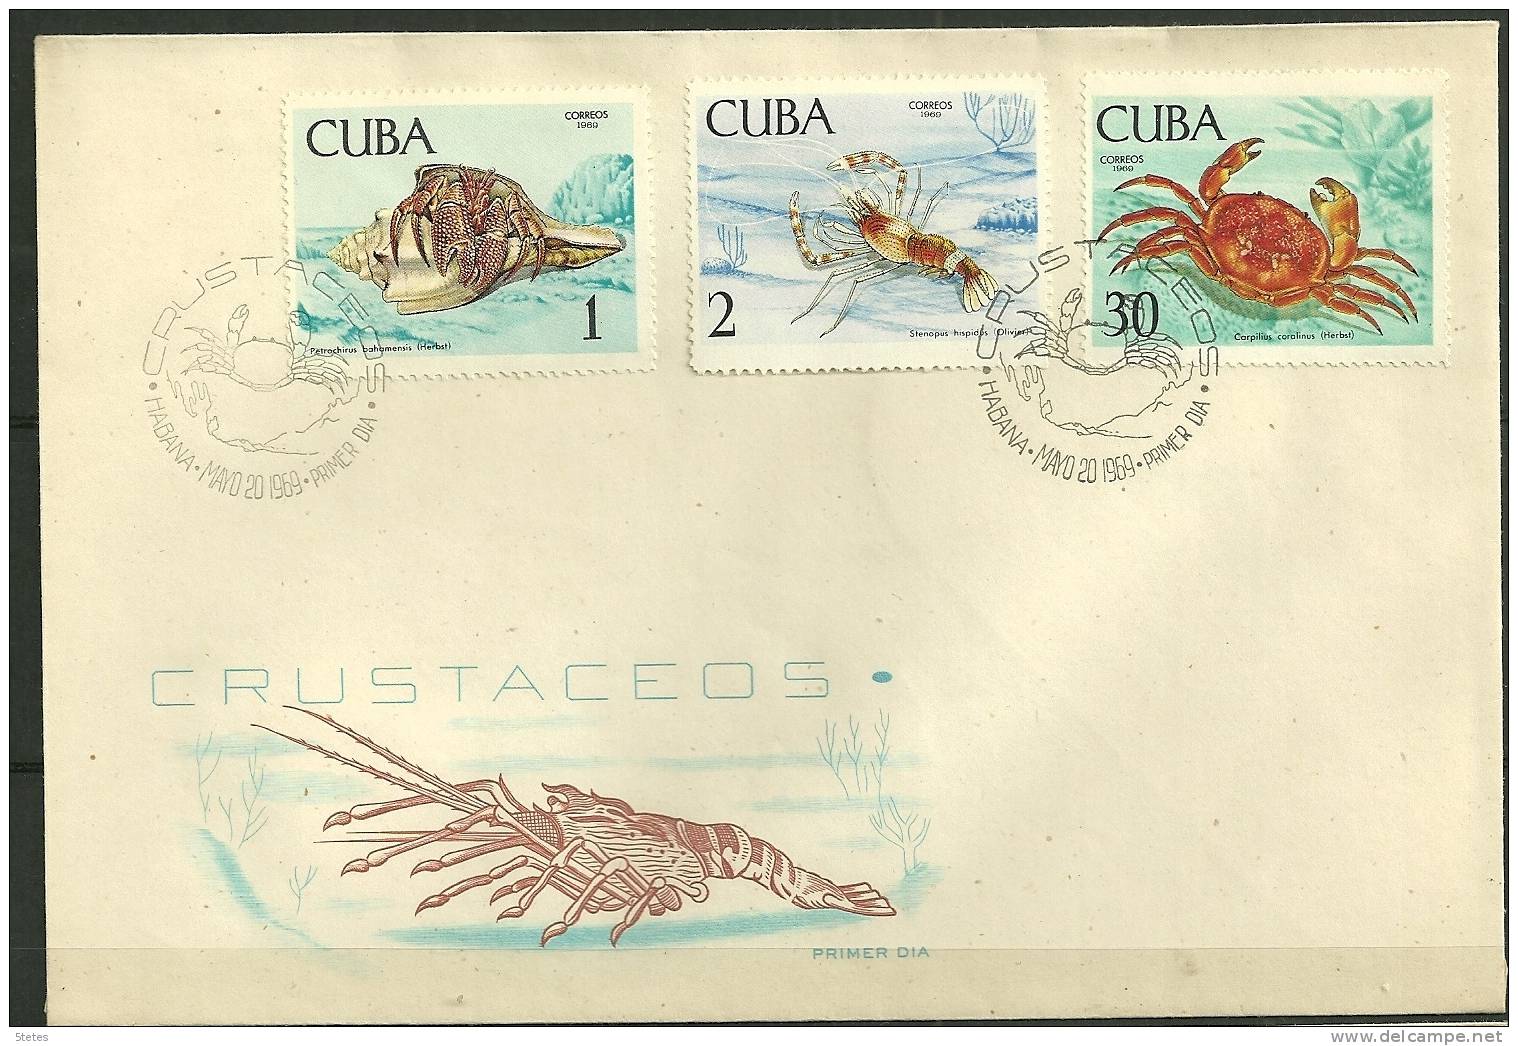 Cuba, Enveloppe Premier Jour N° 1275, 1276, 1281" Crustacés" - FDC